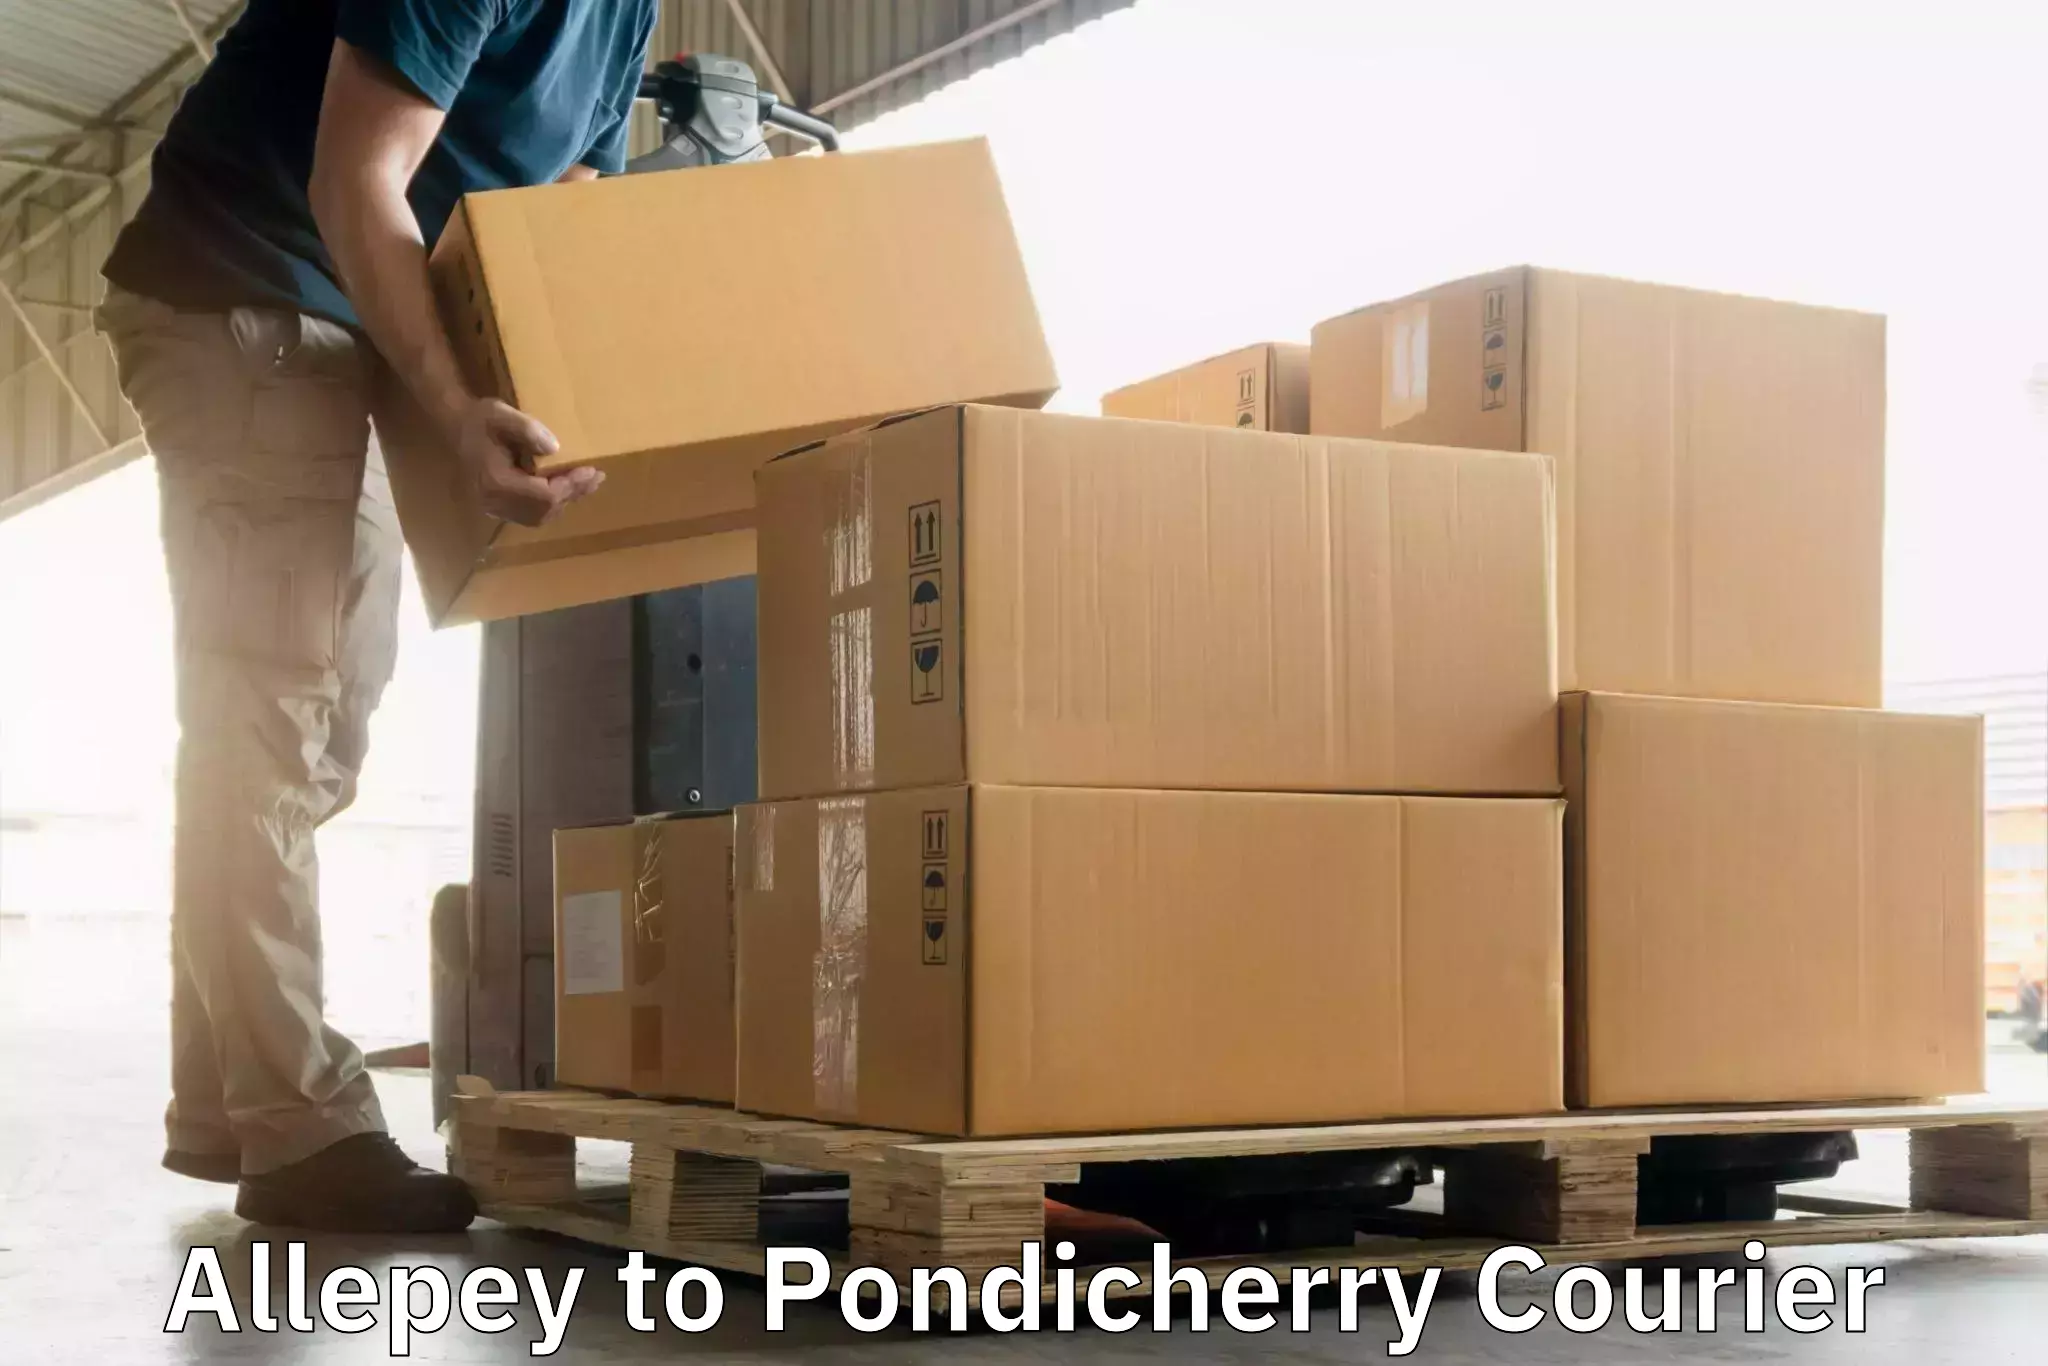 Urban courier service Allepey to Pondicherry